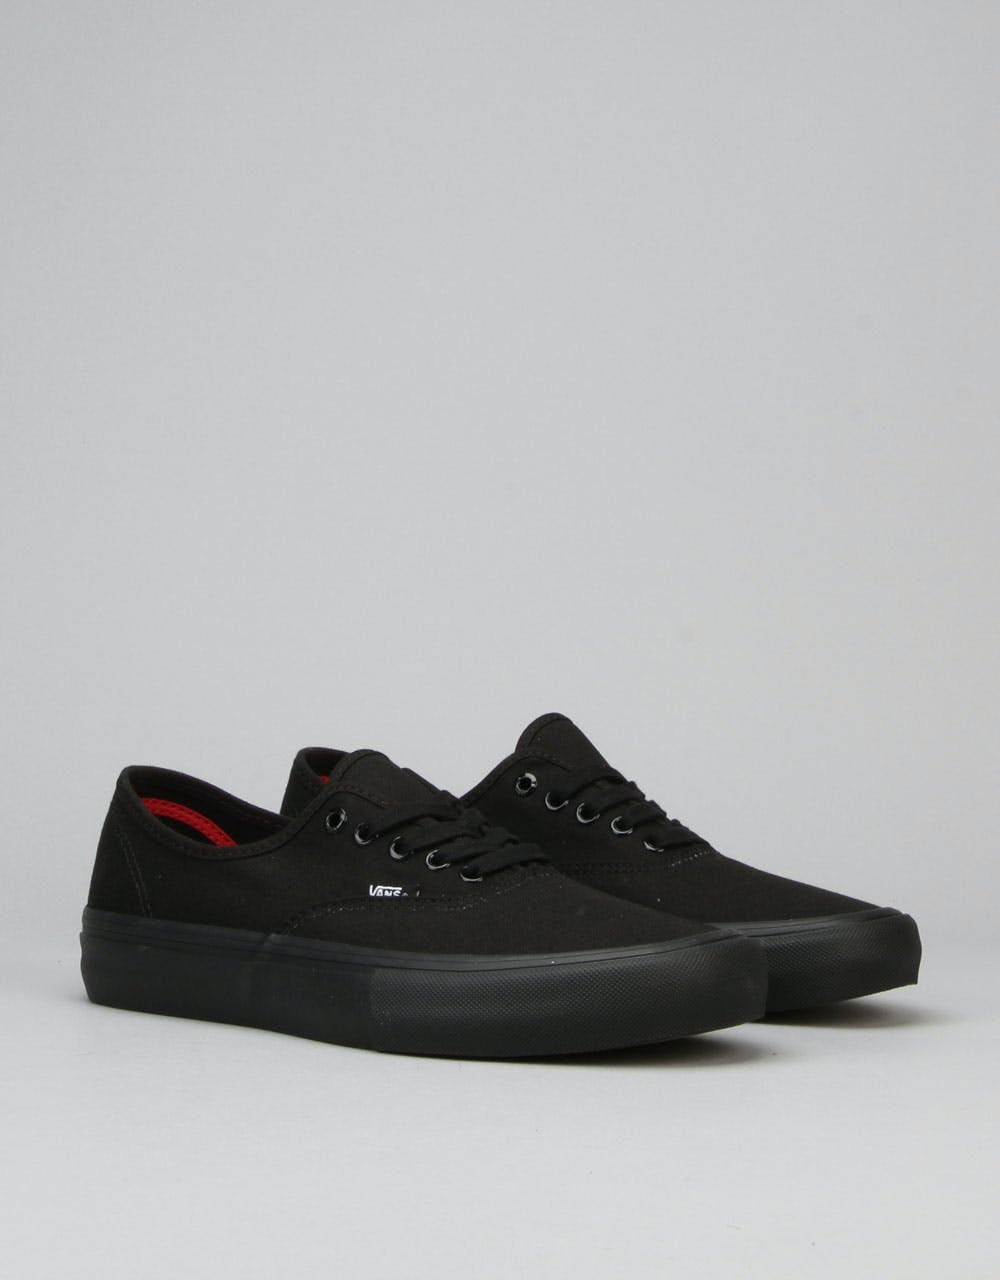 Vans Authentic Pro Skate Shoes - Black/Black